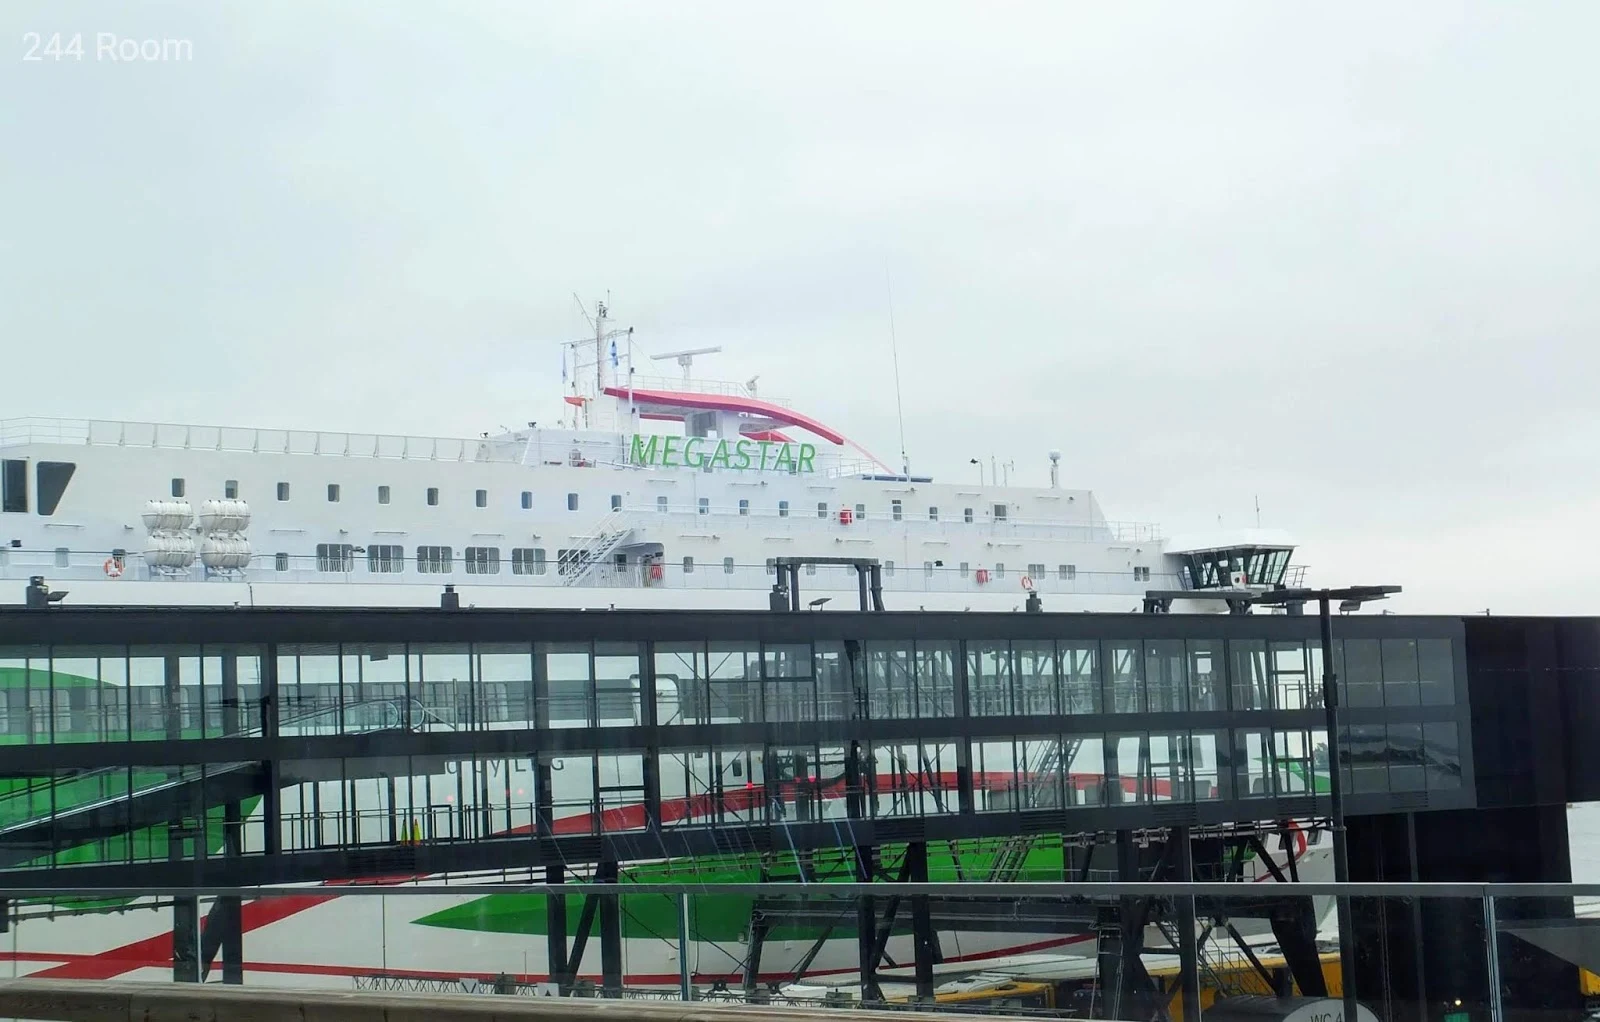 Tallinksilja line Megastar ferry